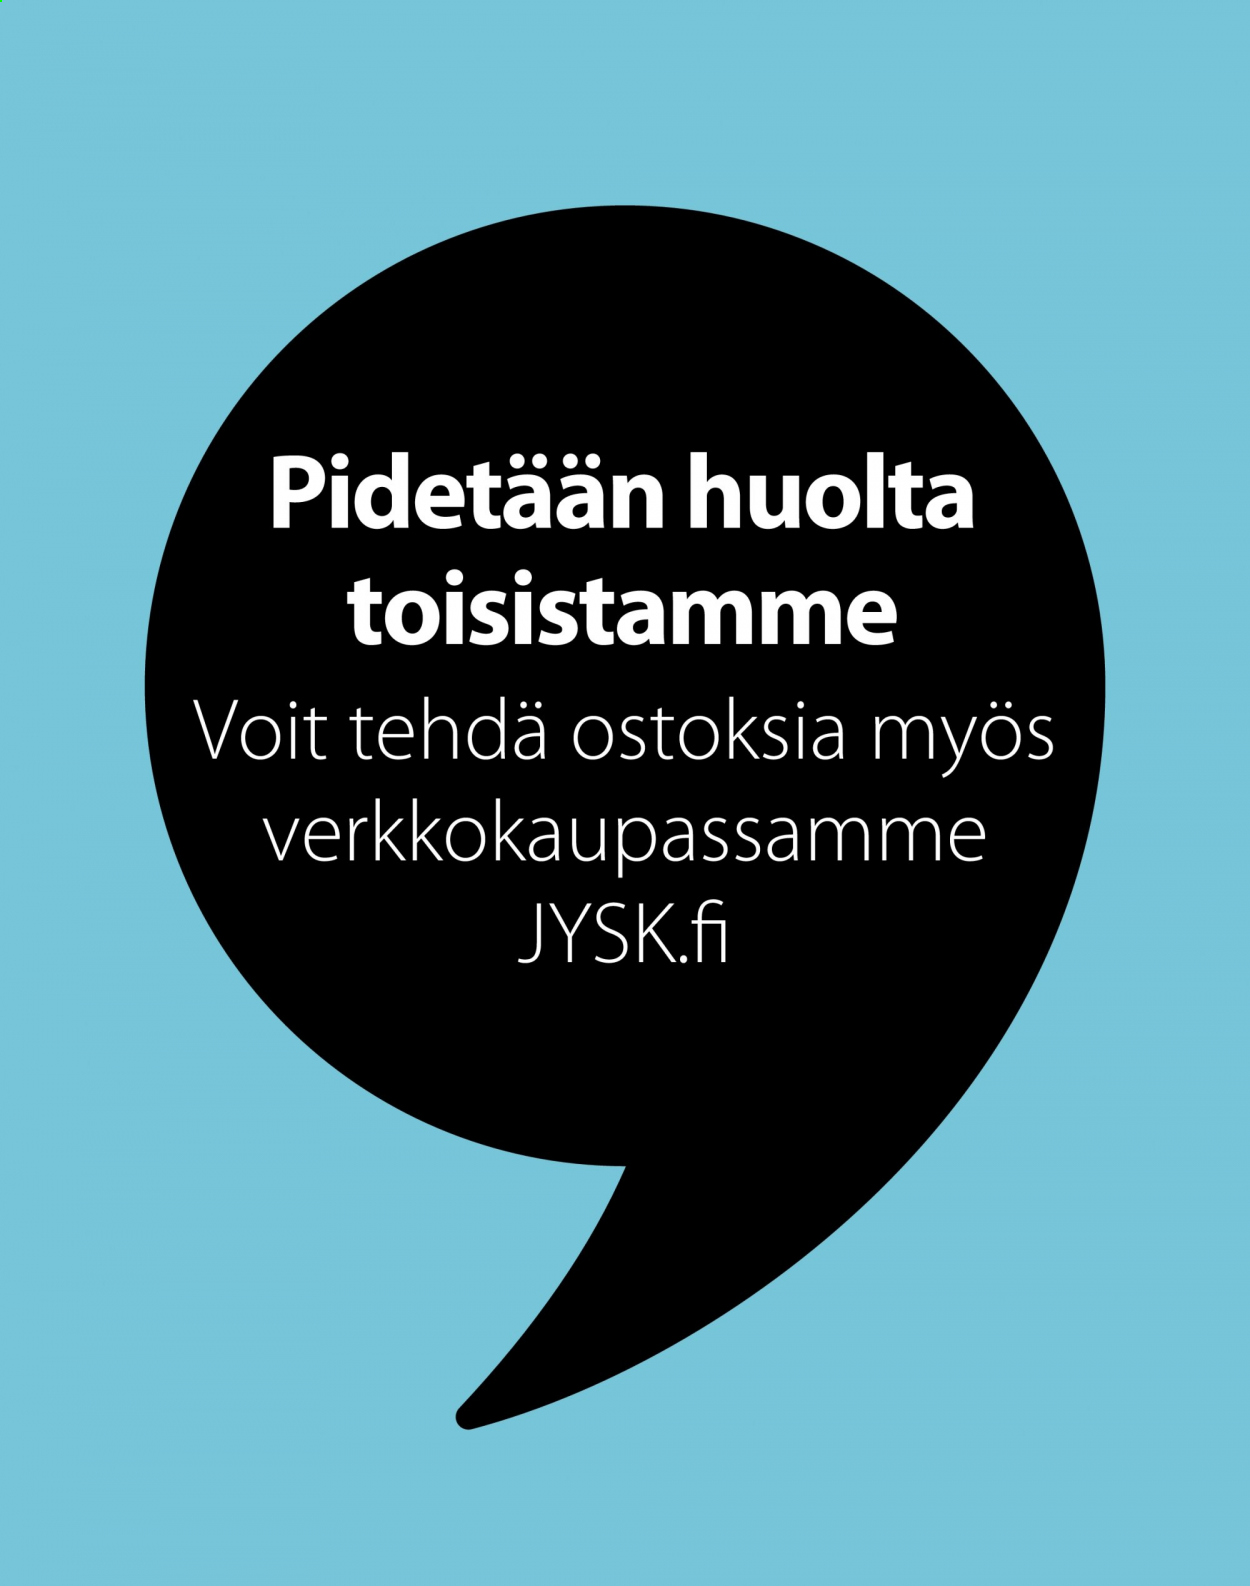 JYSK tarjouslehti  - 29.03.2021 - 11.04.2021.